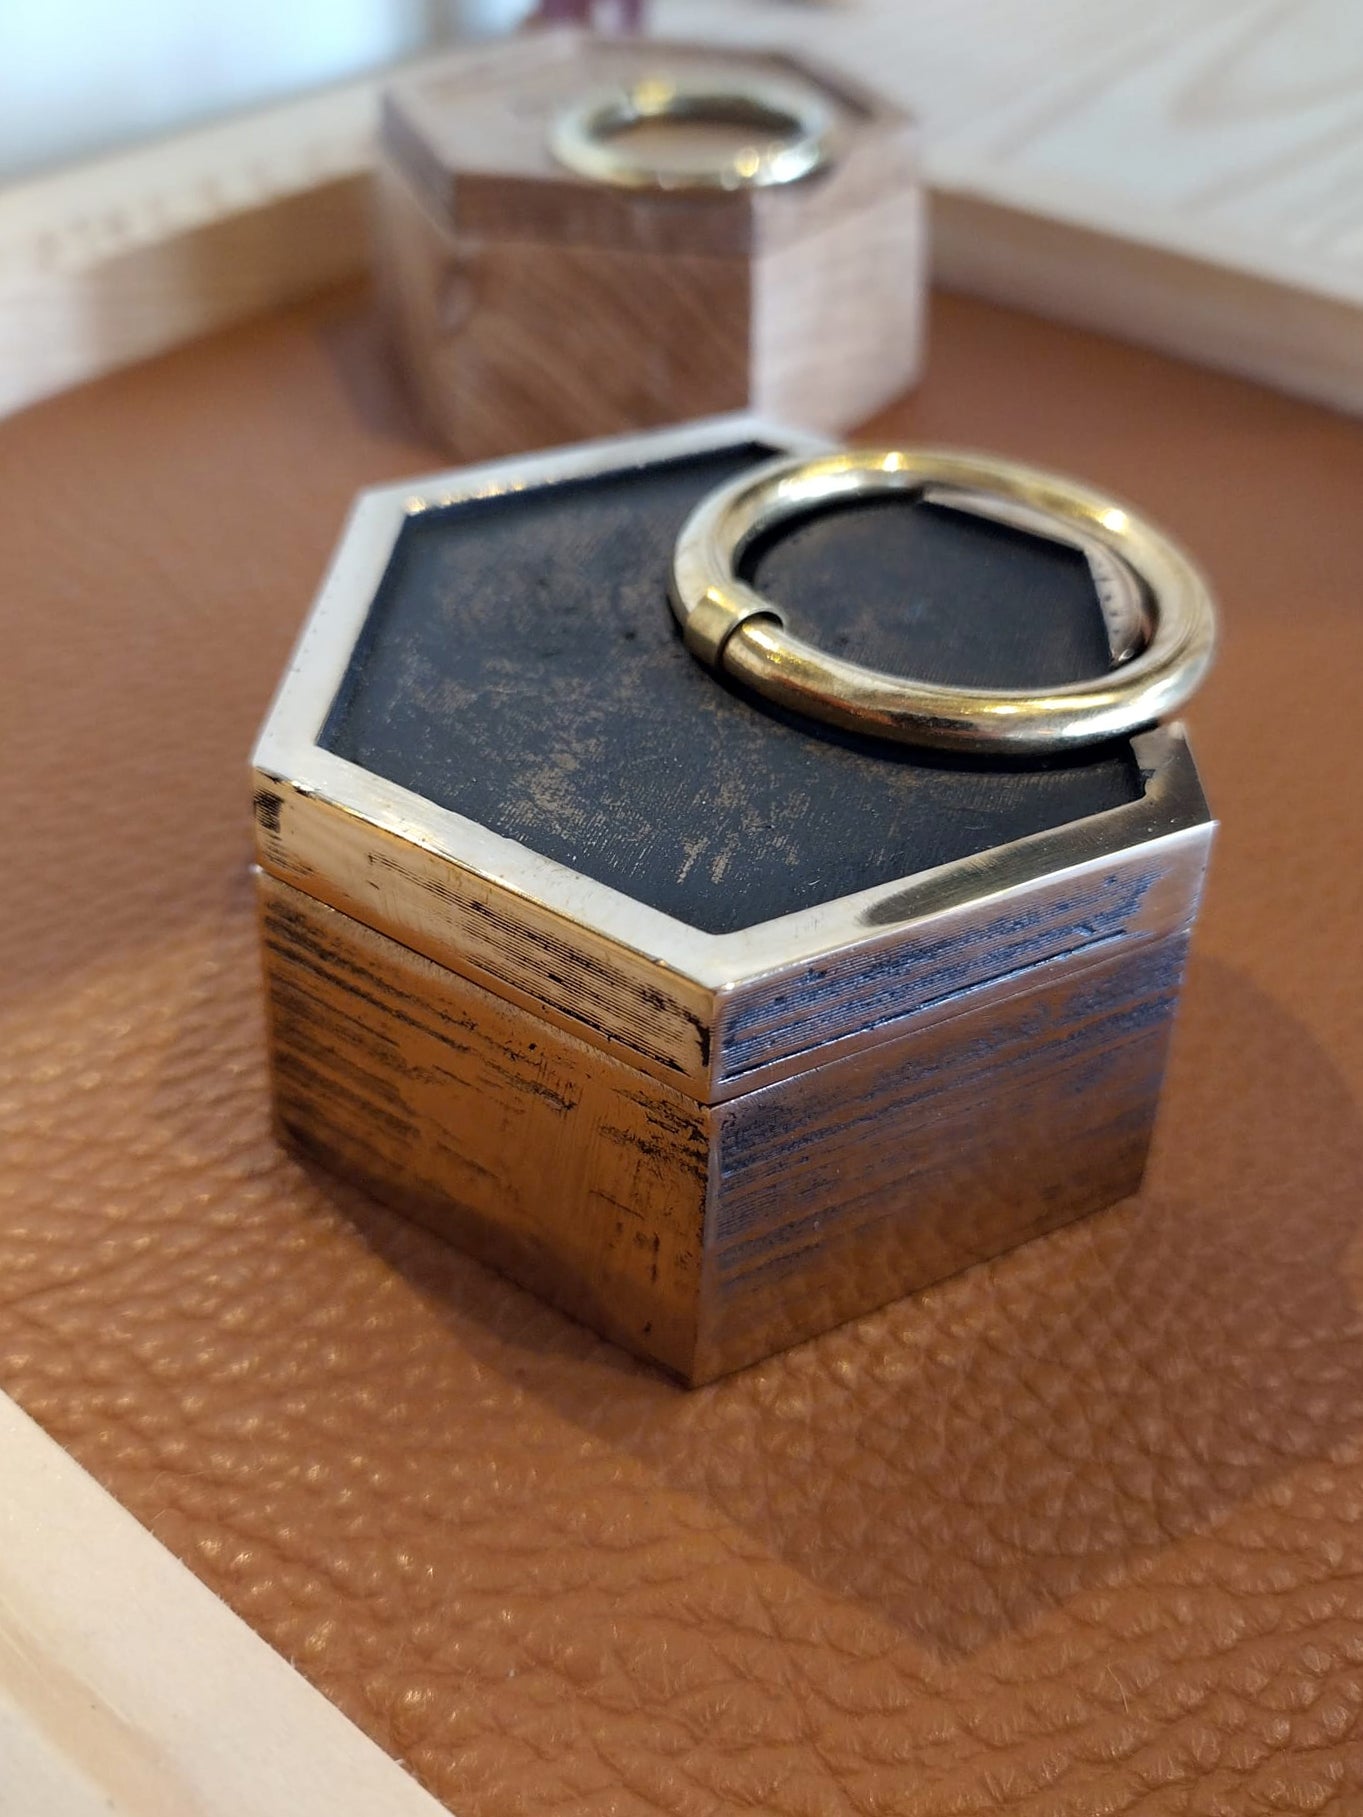 Cette boîte à bijoux, conçue à partir des poids officiels de 1 kg, est unique en son genre. Disponible en bronze massif, ou en chêne français (DM us), la partie inférieure intérieure est recouverte d'un beau cuir cognac brun naturel. L'anneau du